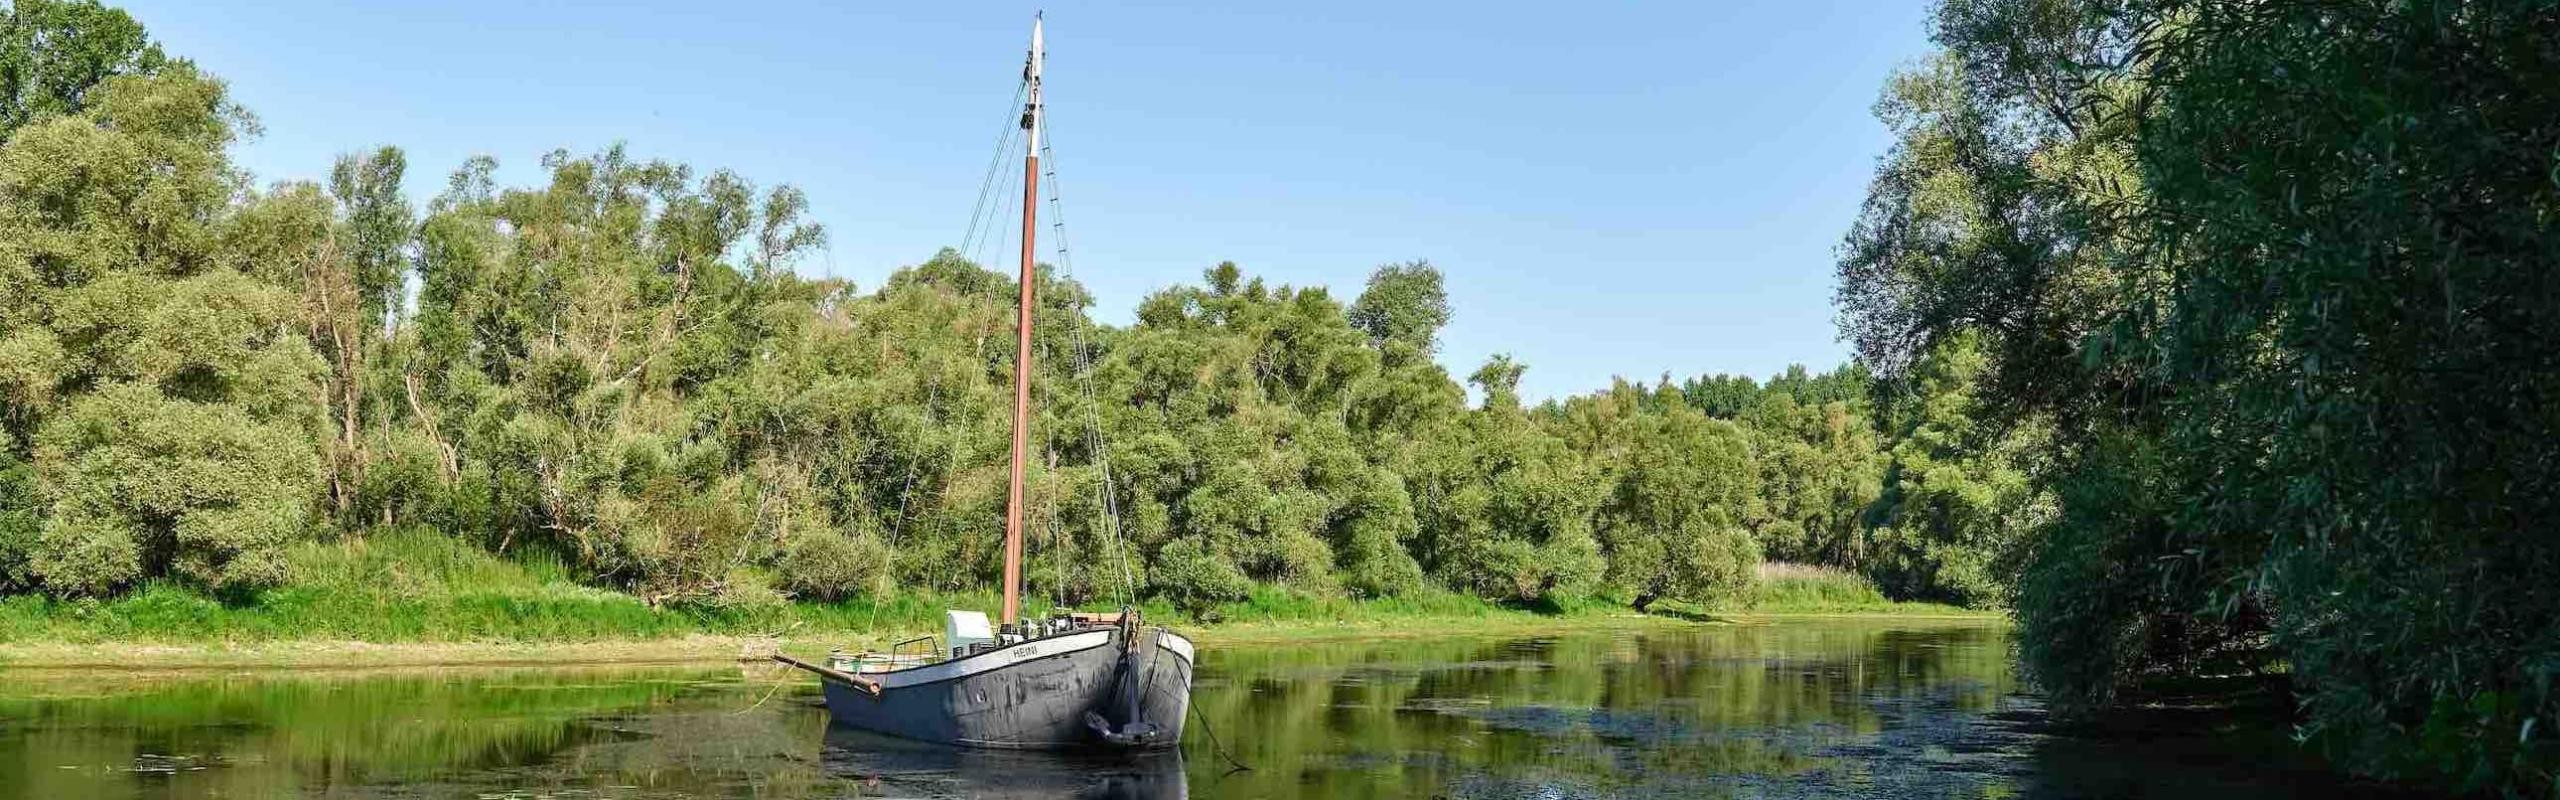 Das Bild zeigt einen Aalschokker, ein Boot mit Mast, in einem Fluß, umgeben von viel Grün